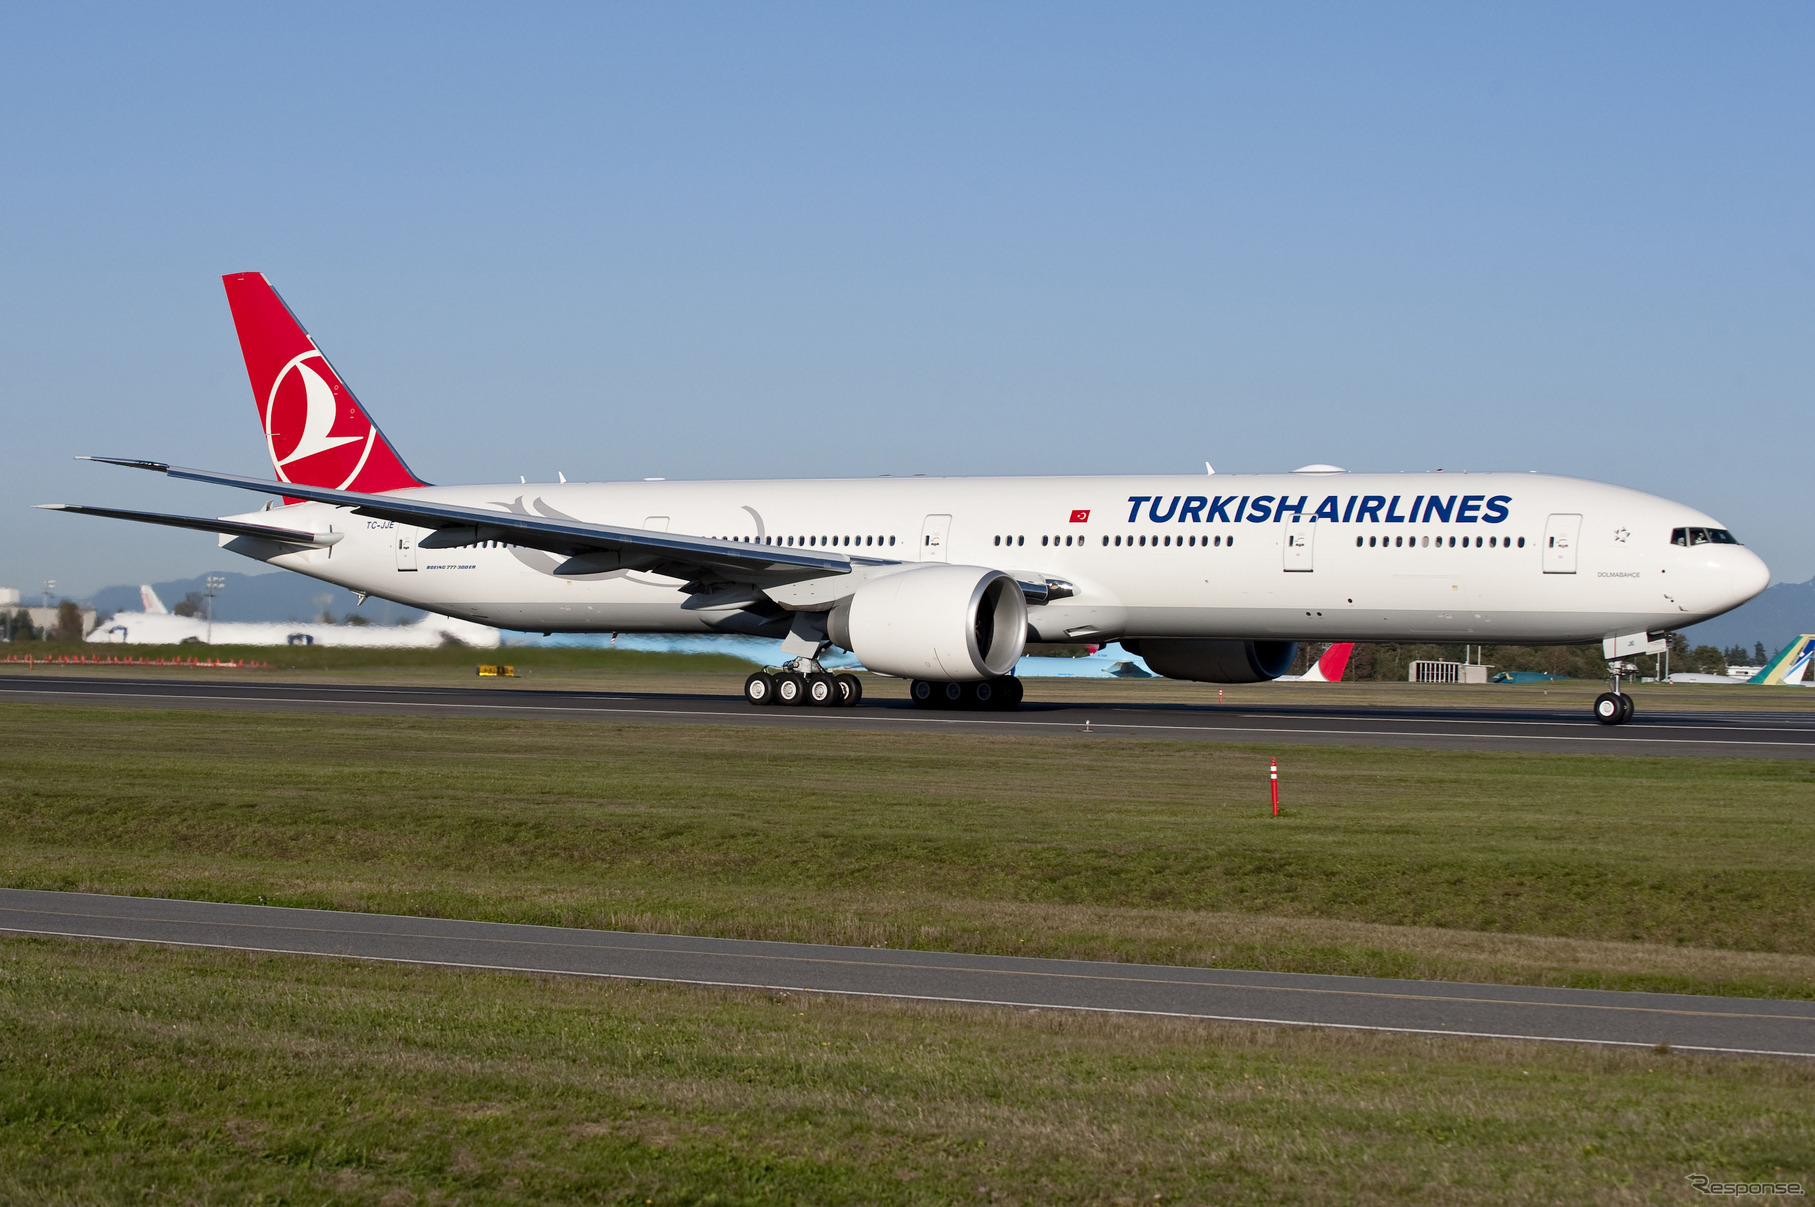 トルコ航空777-300ER